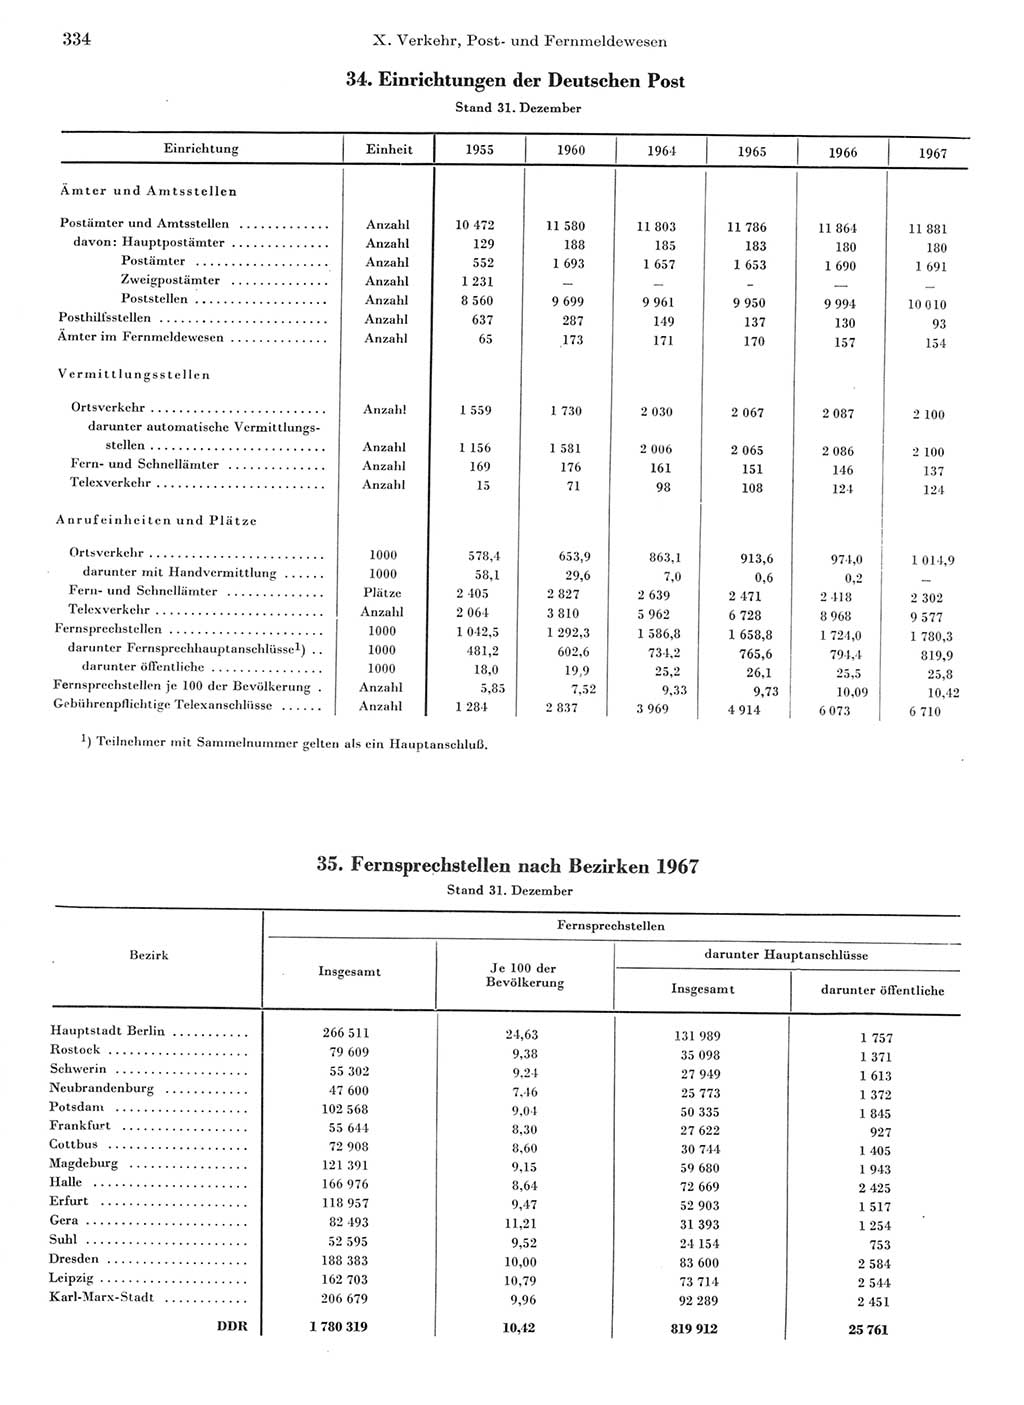 Statistisches Jahrbuch der Deutschen Demokratischen Republik (DDR) 1968, Seite 334 (Stat. Jb. DDR 1968, S. 334)